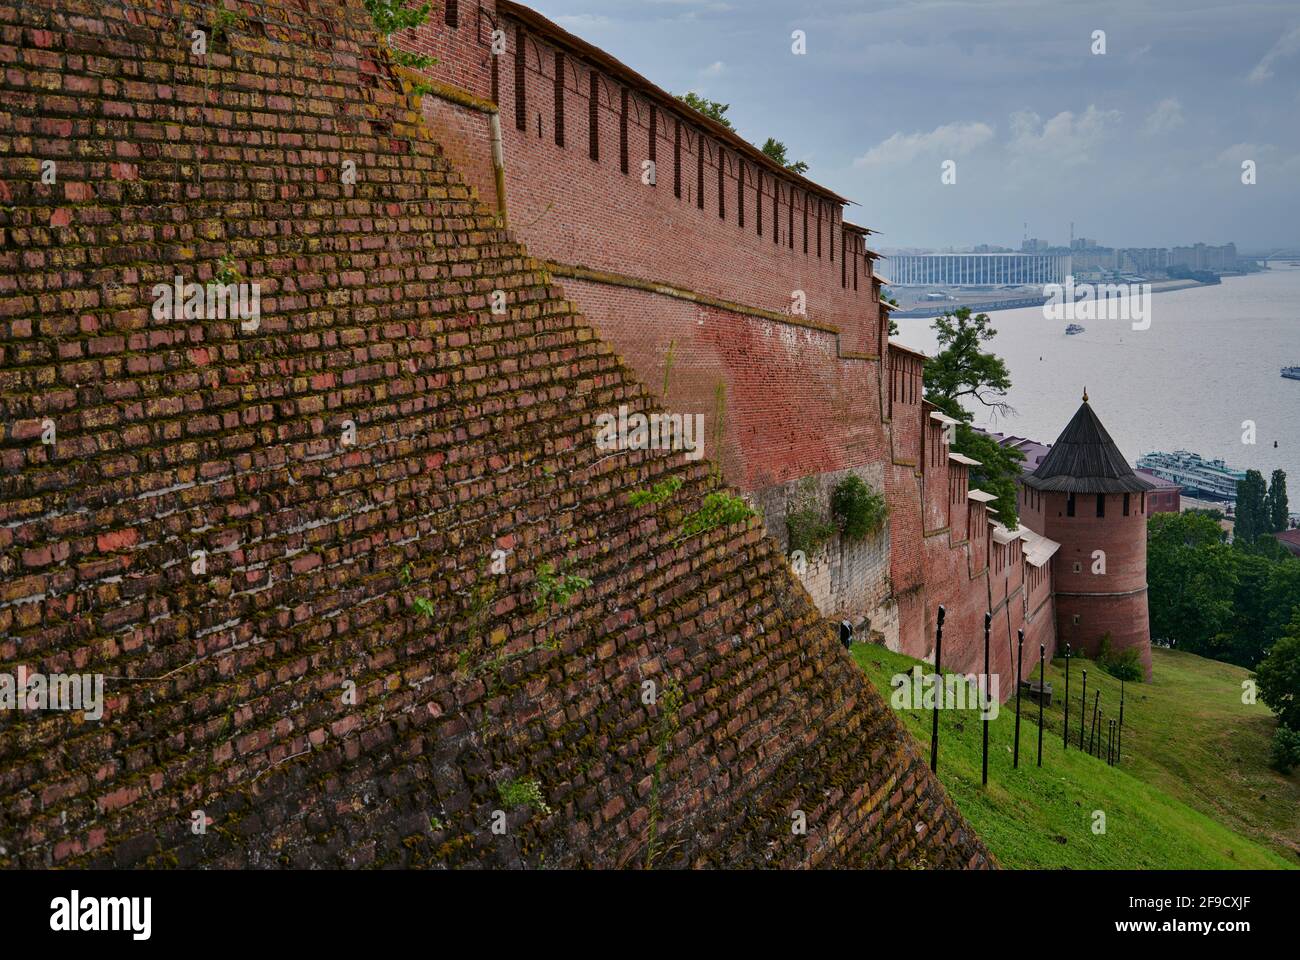 Vista del kremlin de ladrillo del siglo 16th, que forma las murallas de la ciudad del centro histórico de Nizhny Novgorod, y que fue renovado en el siglo 20th Foto de stock